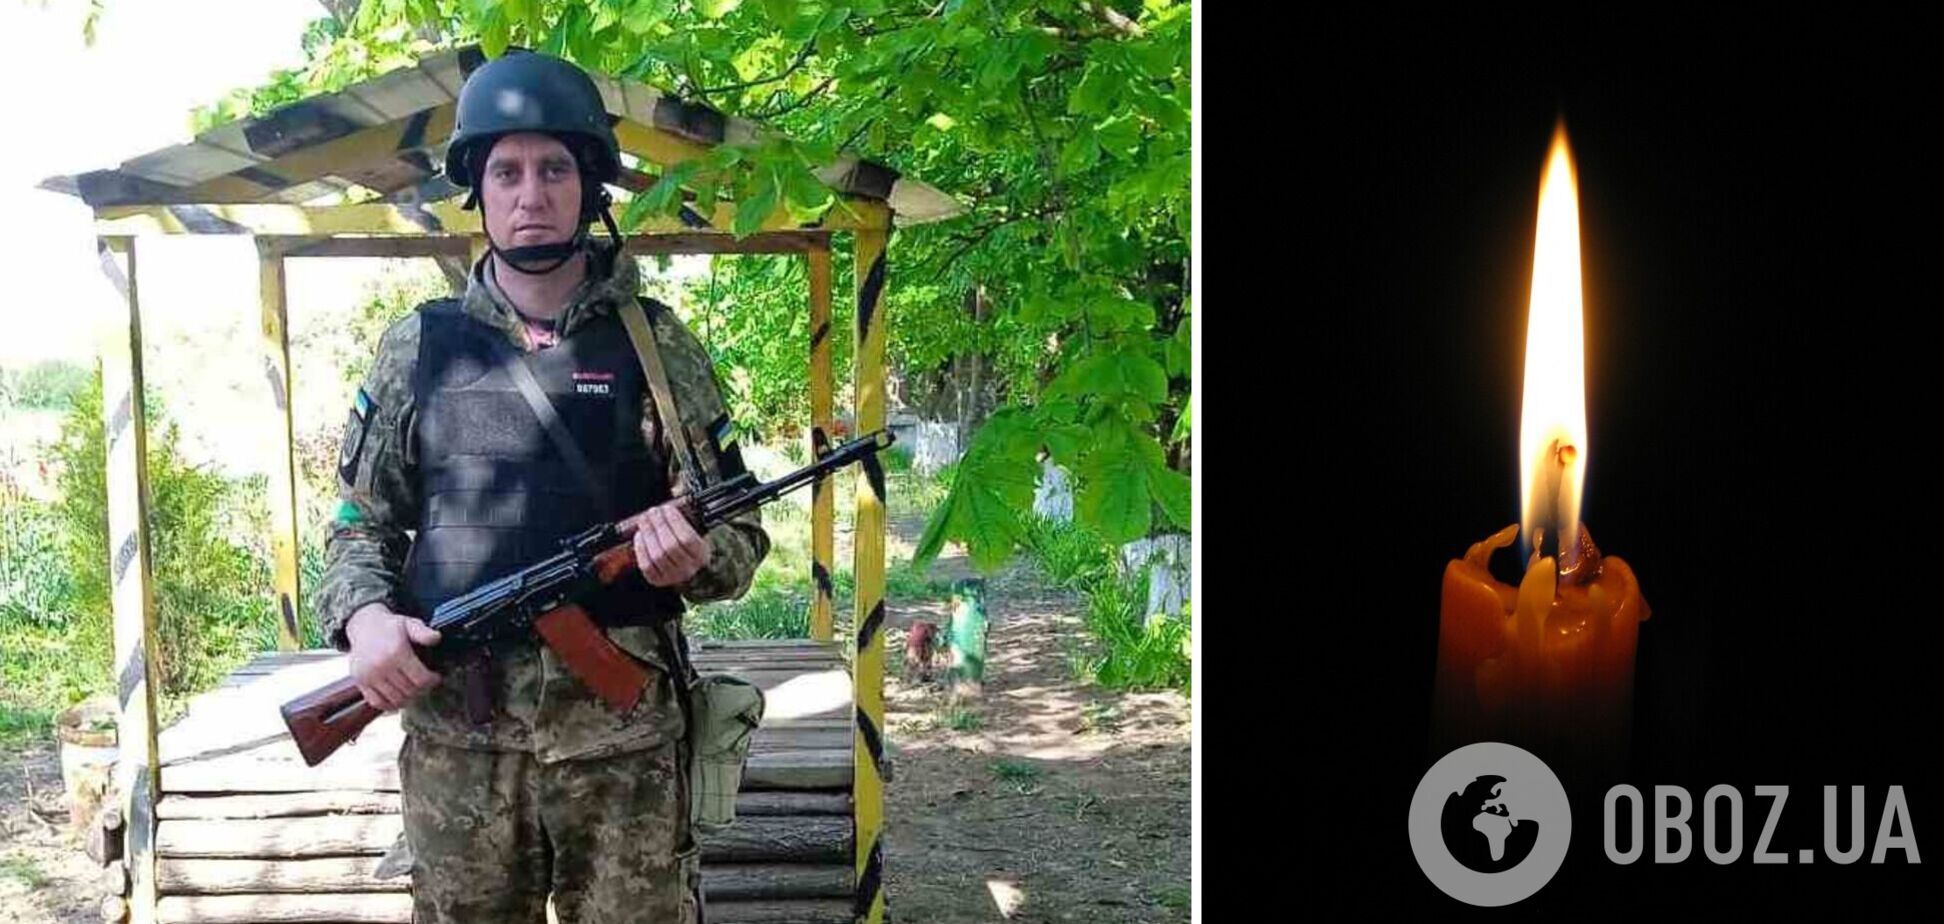 Остался больной отец и маленькая дочь: на фронте погиб воин из Одесской области